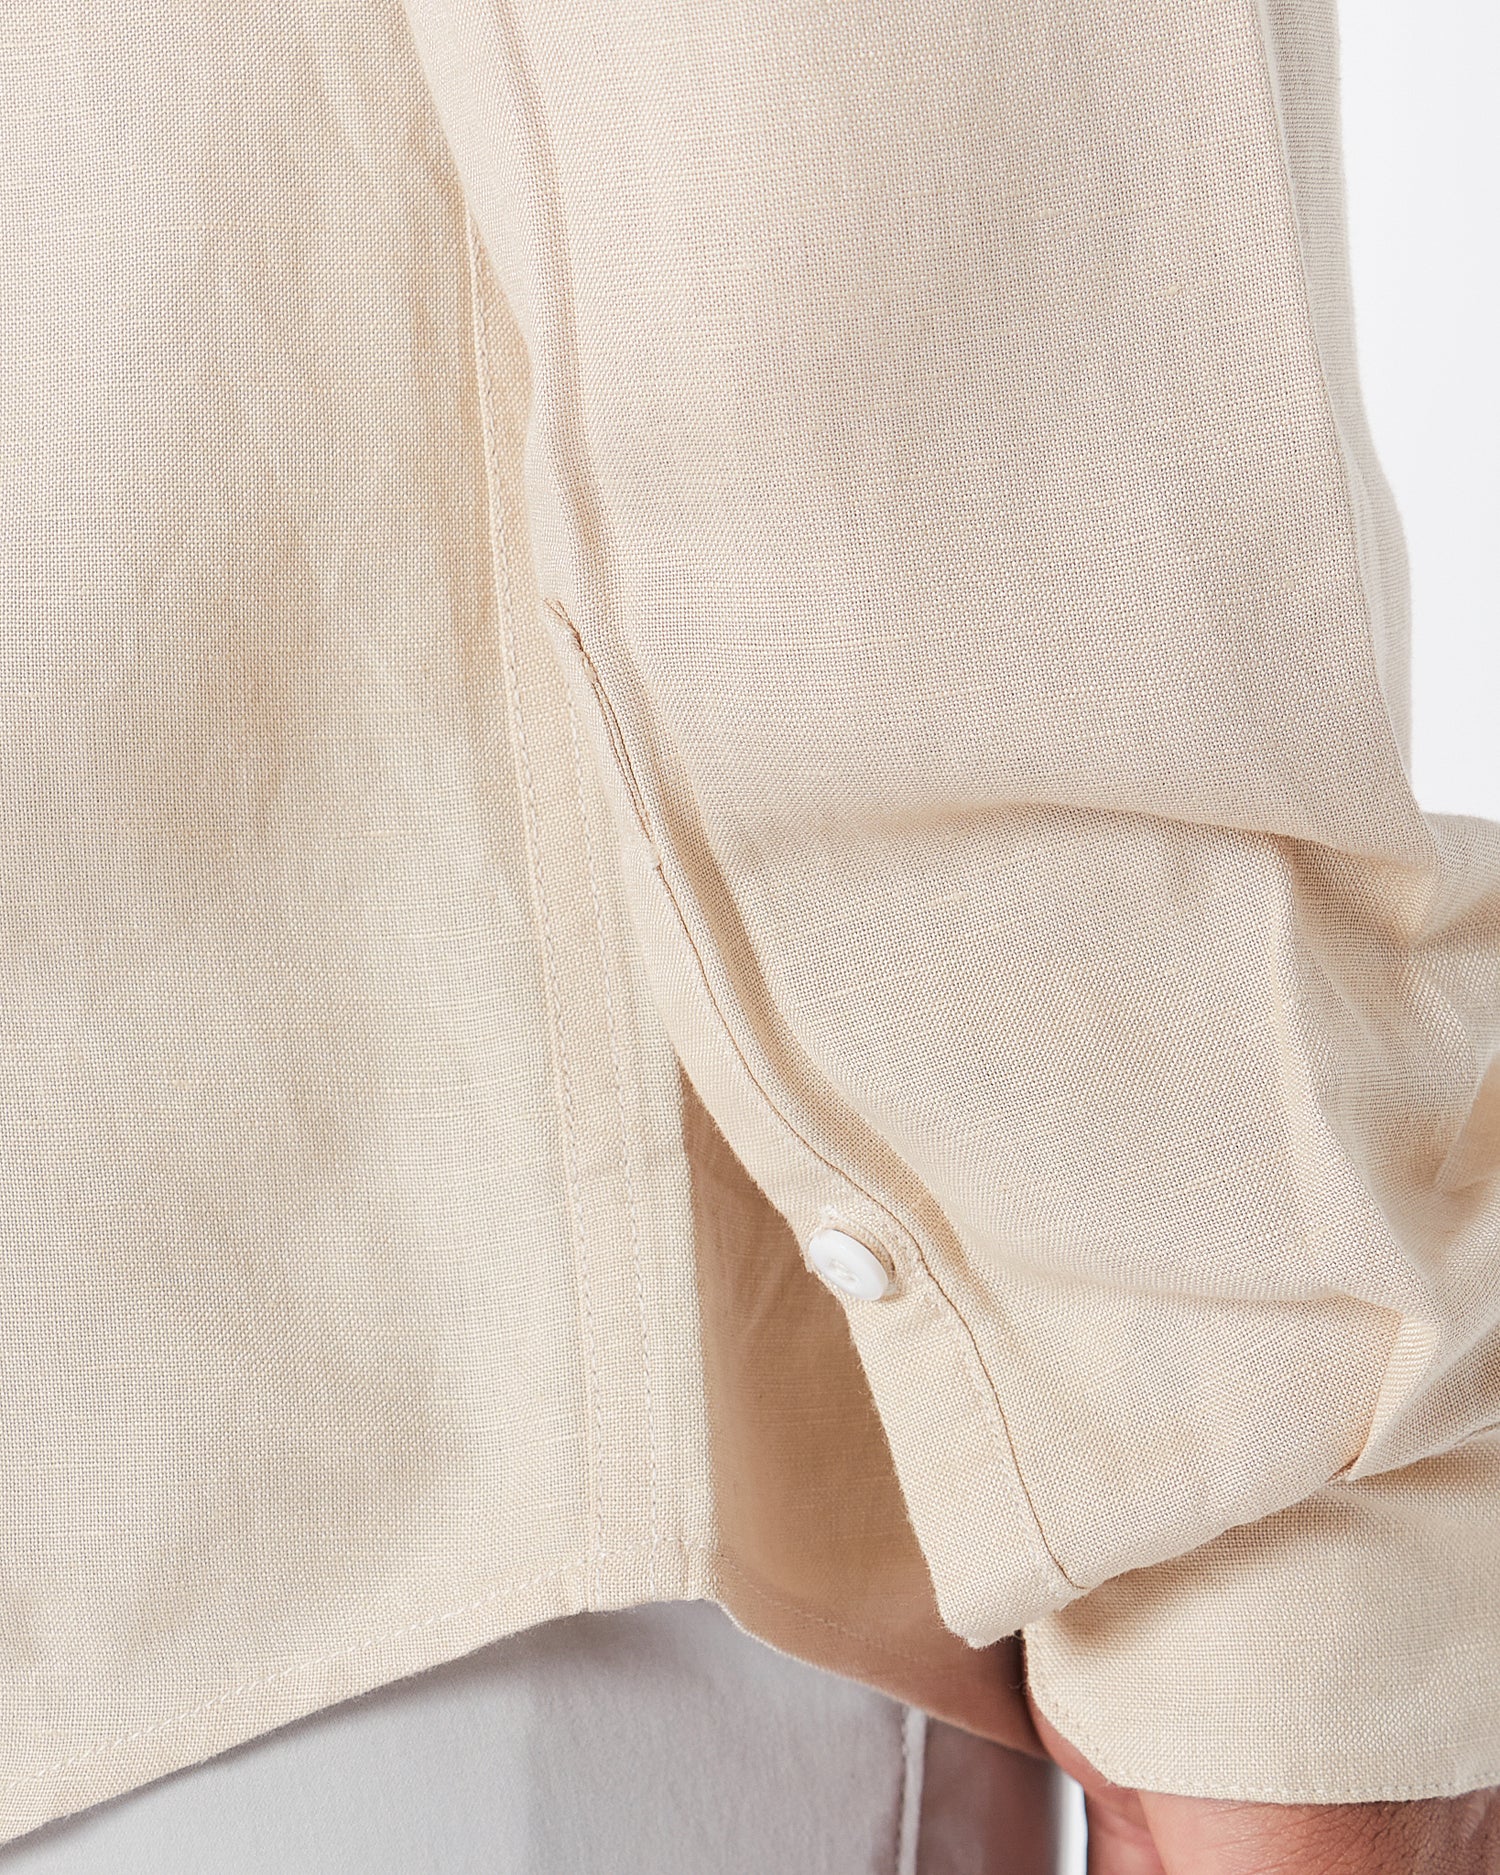 RL 棉质男式奶油色衬衫长袖 30.90